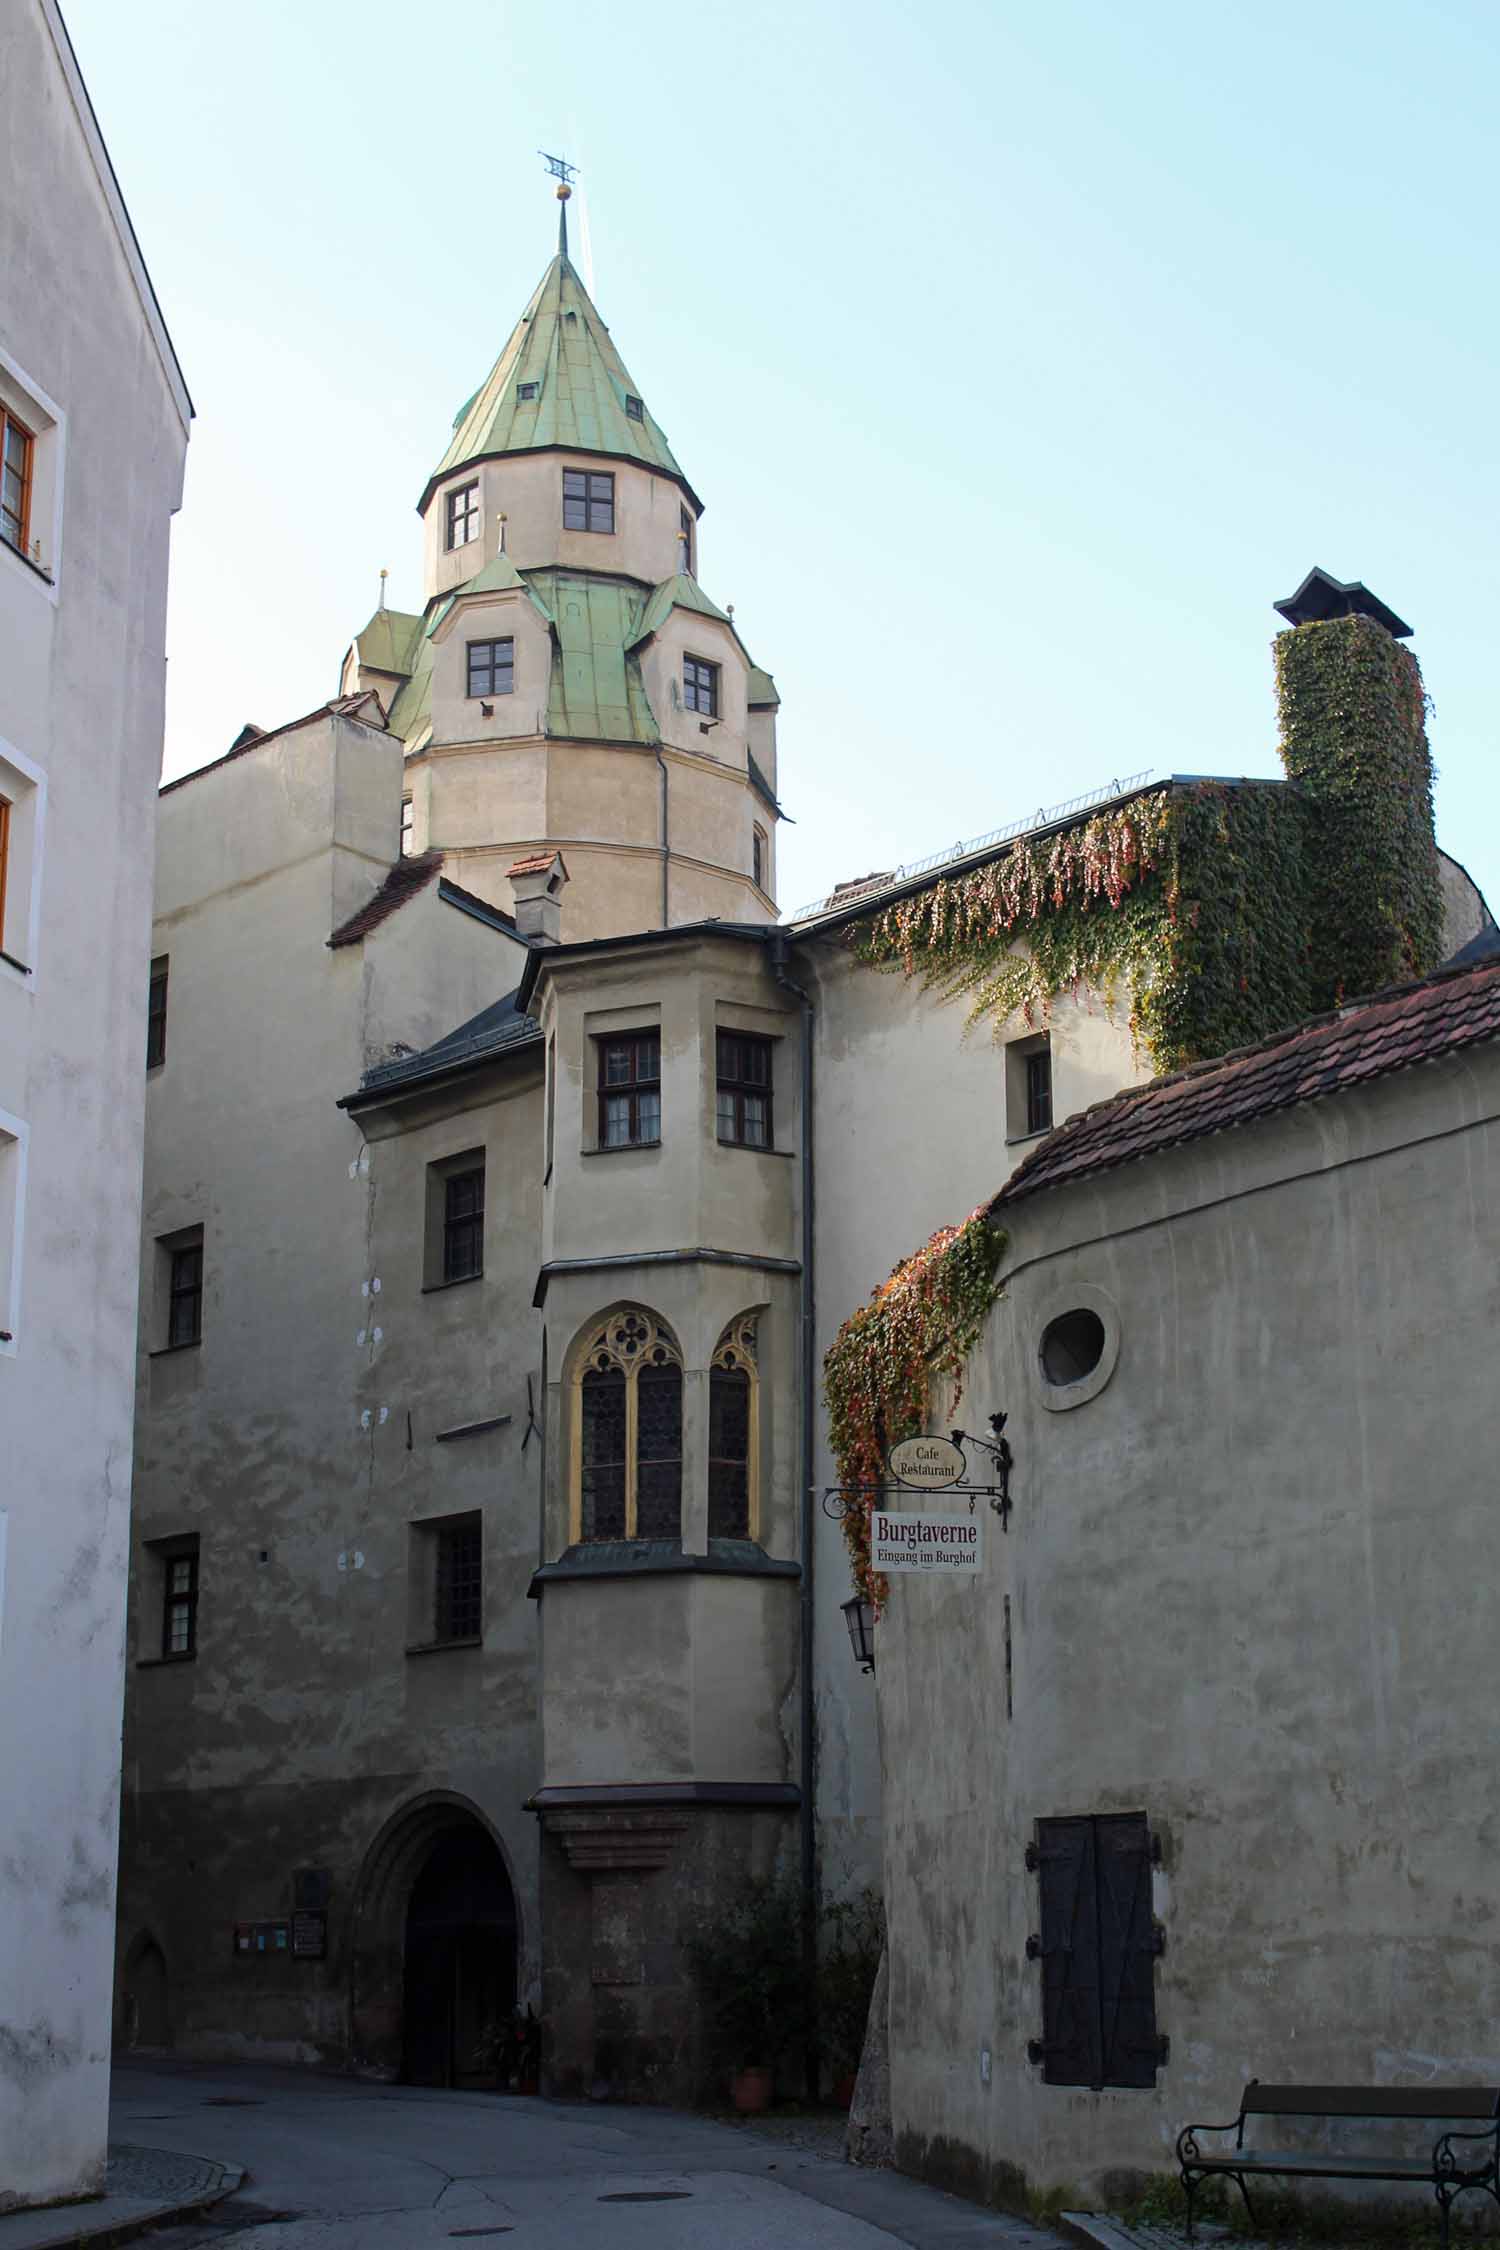 Hall en Tyrol, Château Hasegg